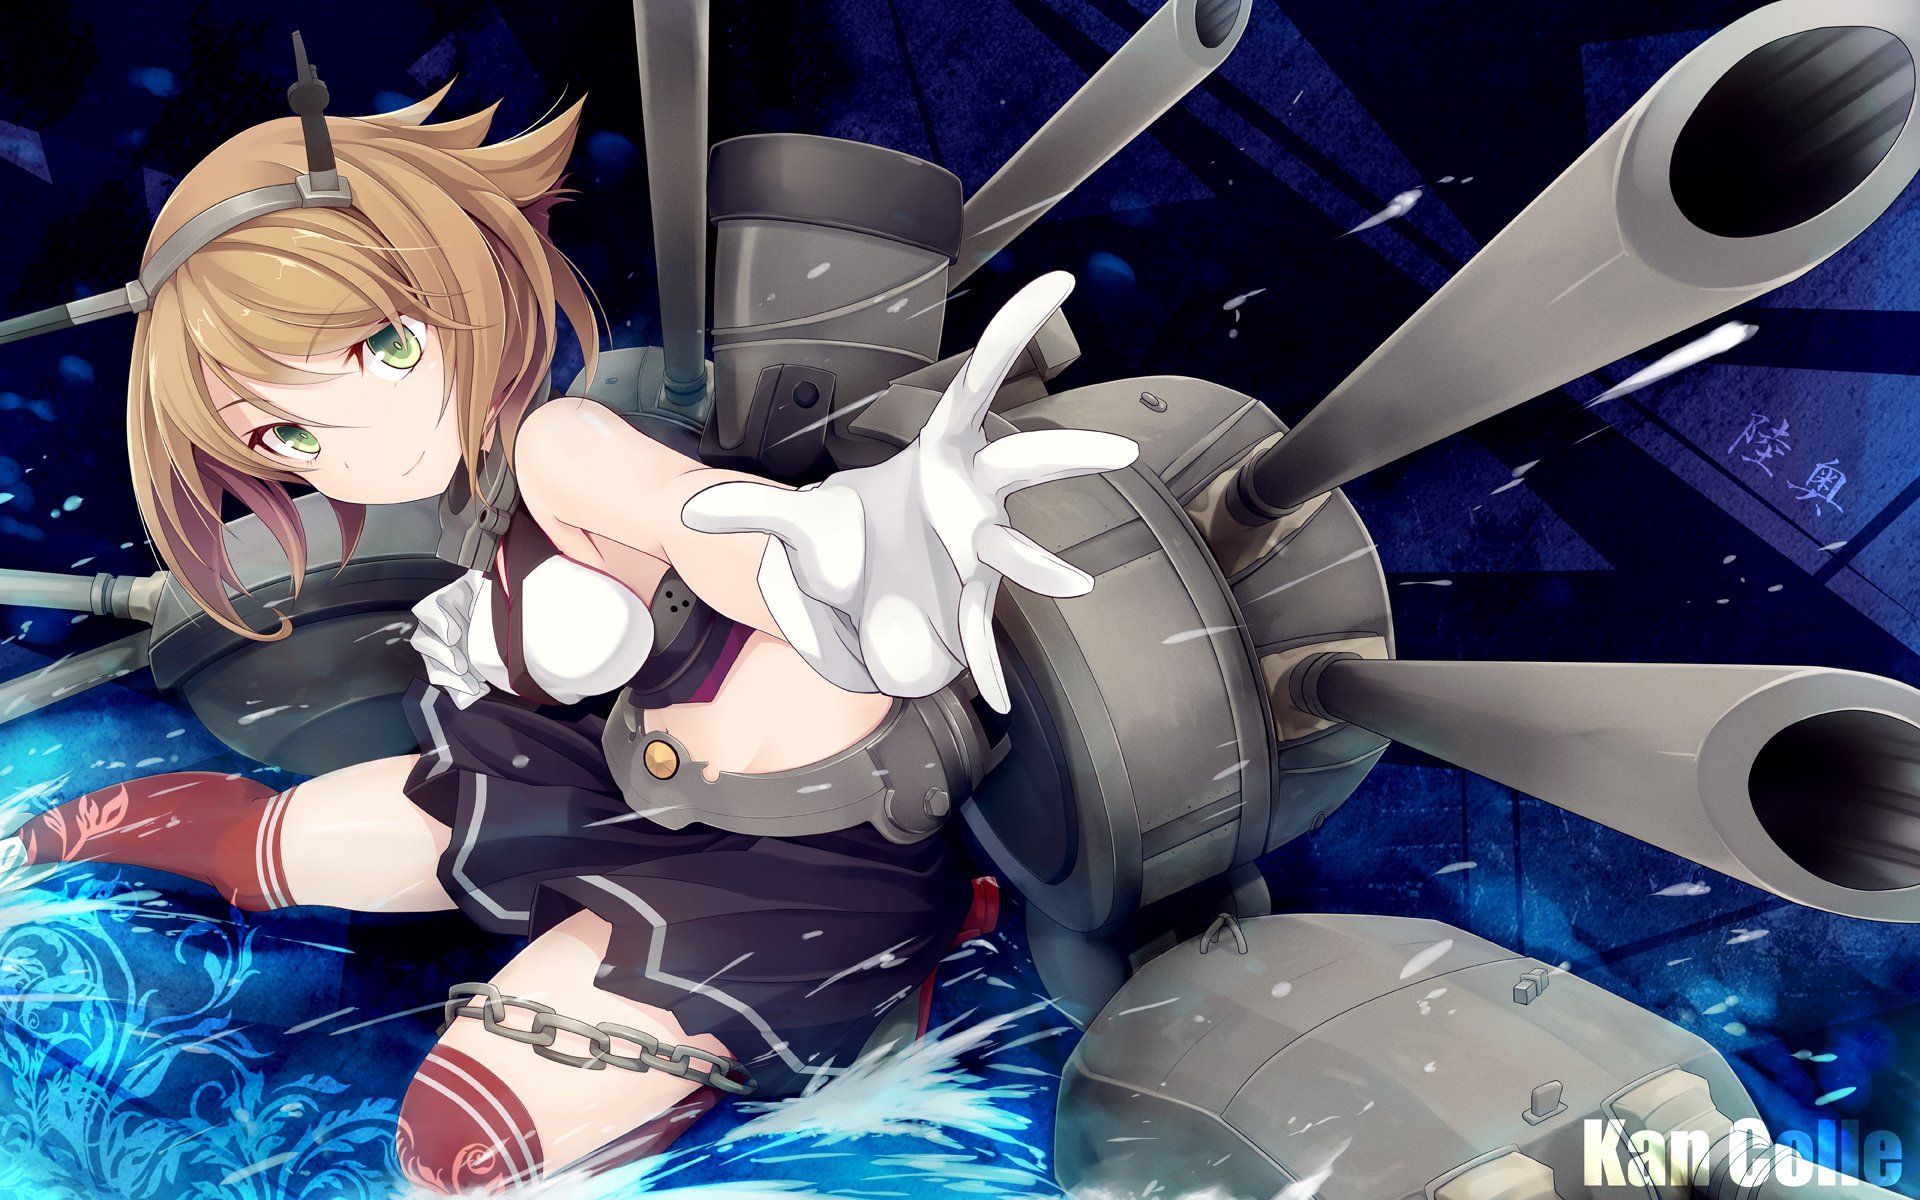 Nagato Class Battleship Mutsu Hd Wallpaper Background Image 19x10 Wallpaper Abyss